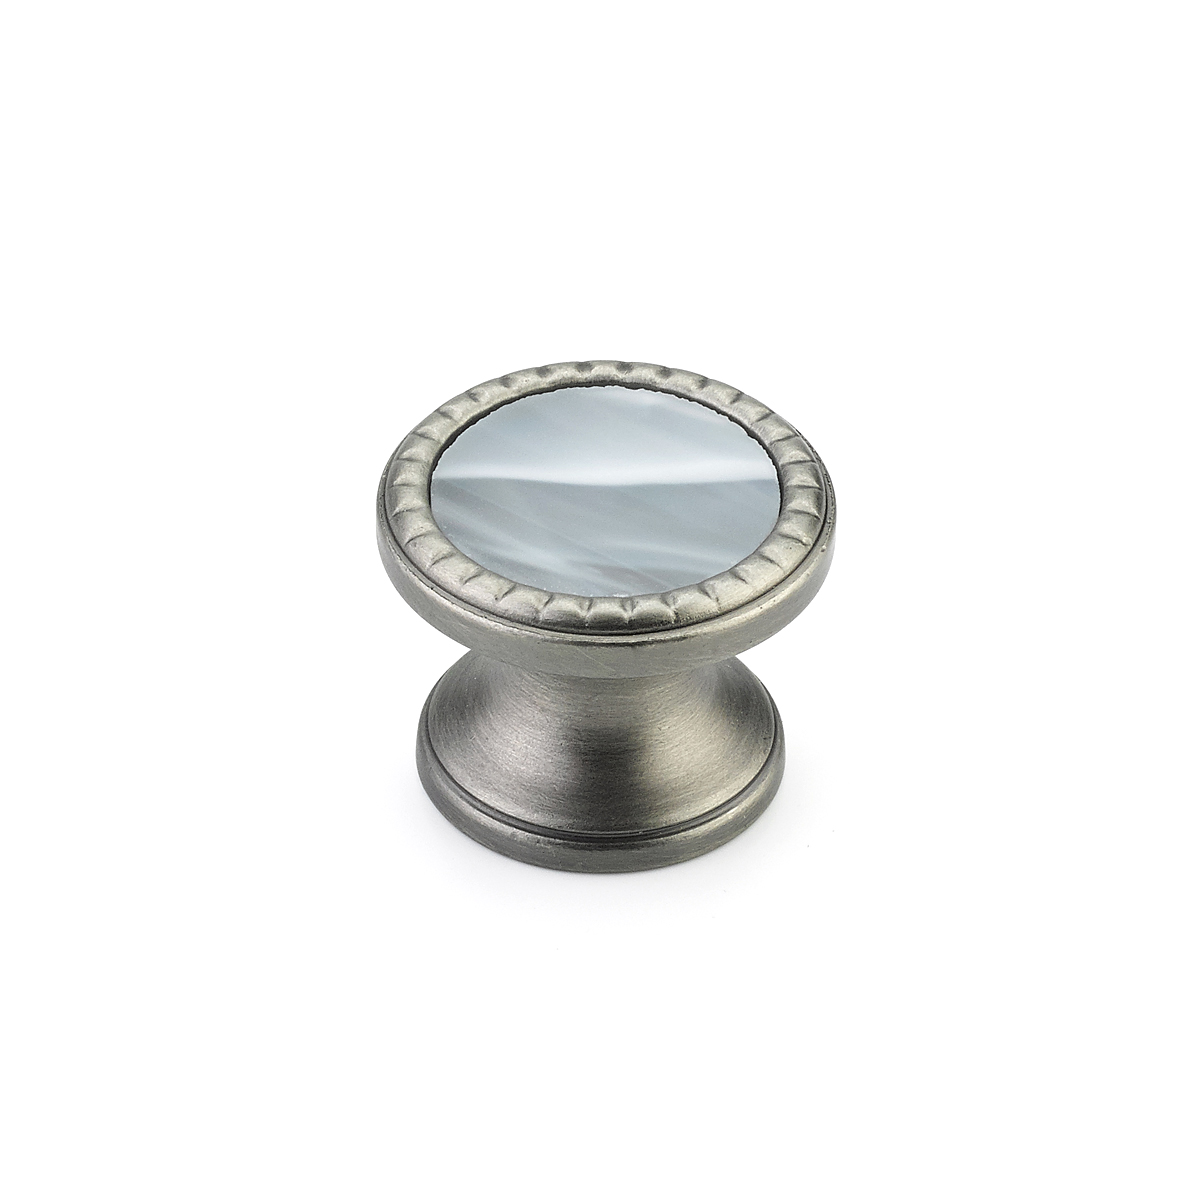 Schaub 20-AN-GS Round Knob, Antique Nickel, Greystone Glass Inlay, 1-1/4" Dia - Antique Nickel